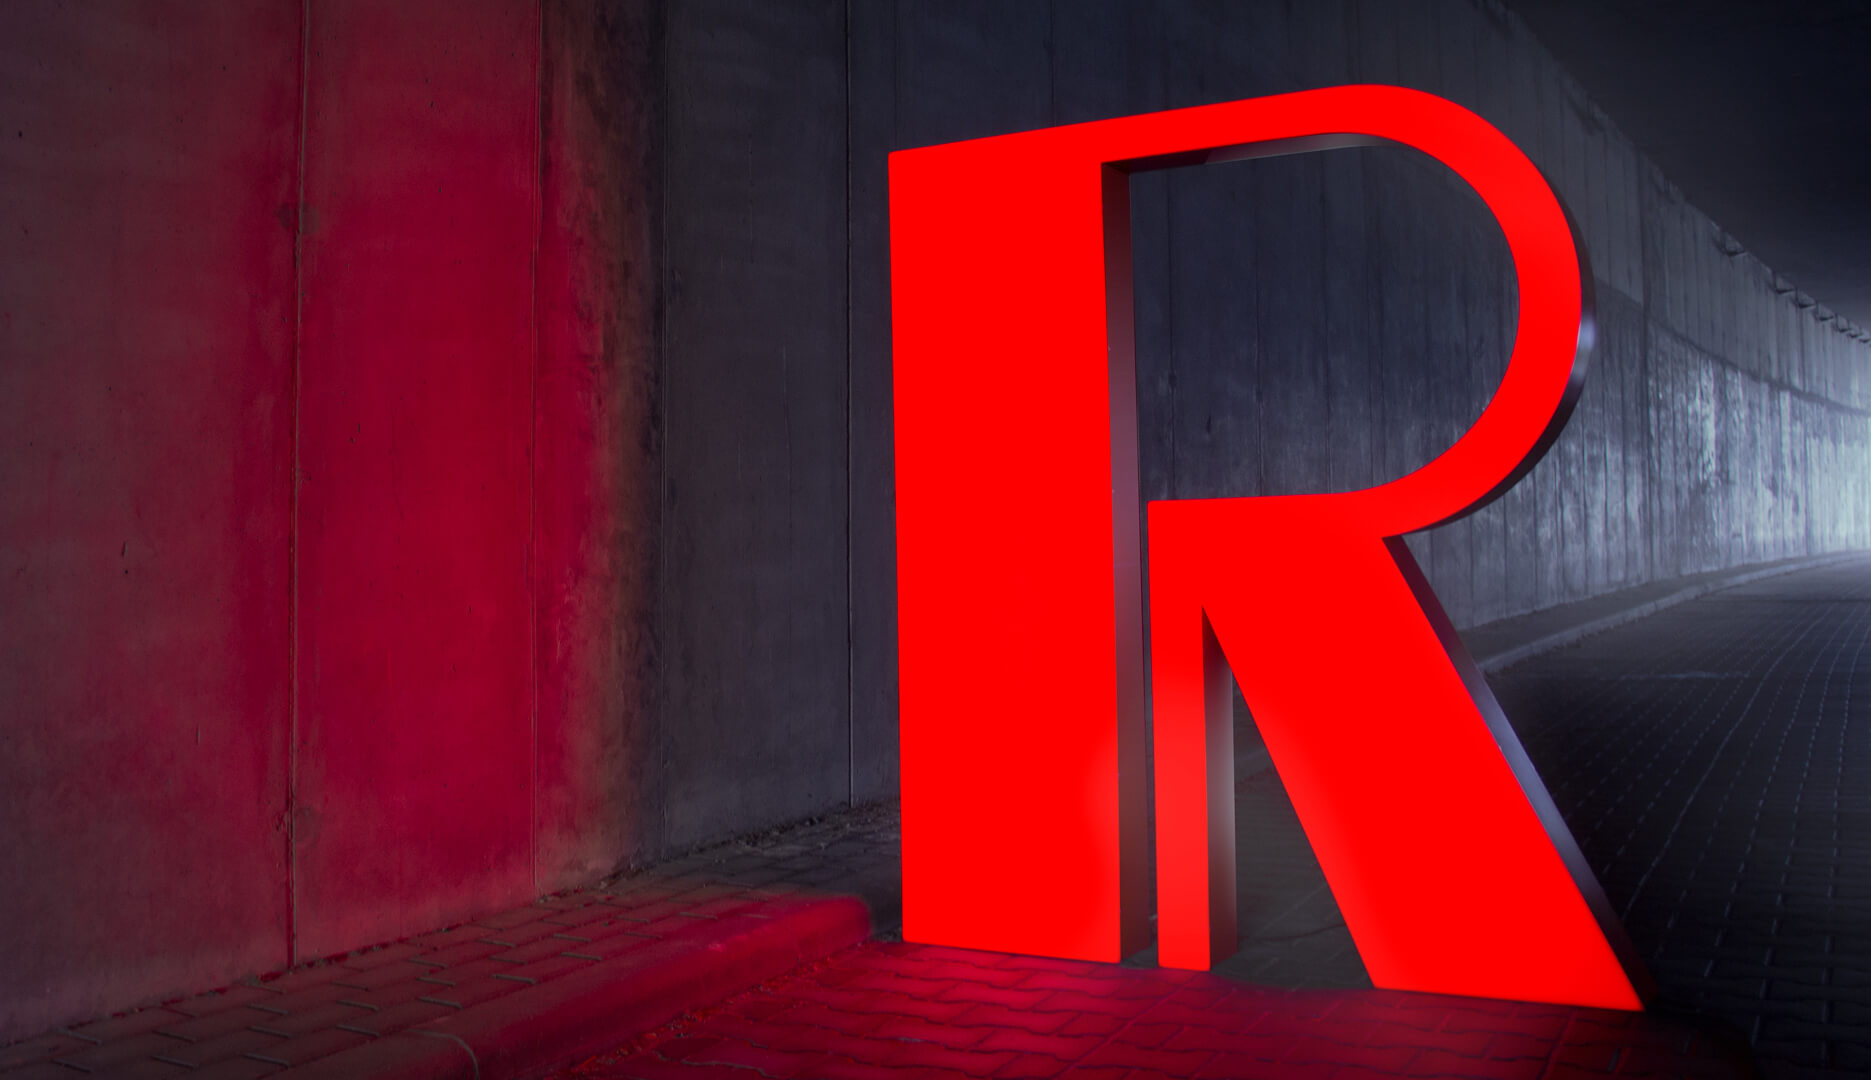 Red letter R - Large format letter R in red, LED backlit.